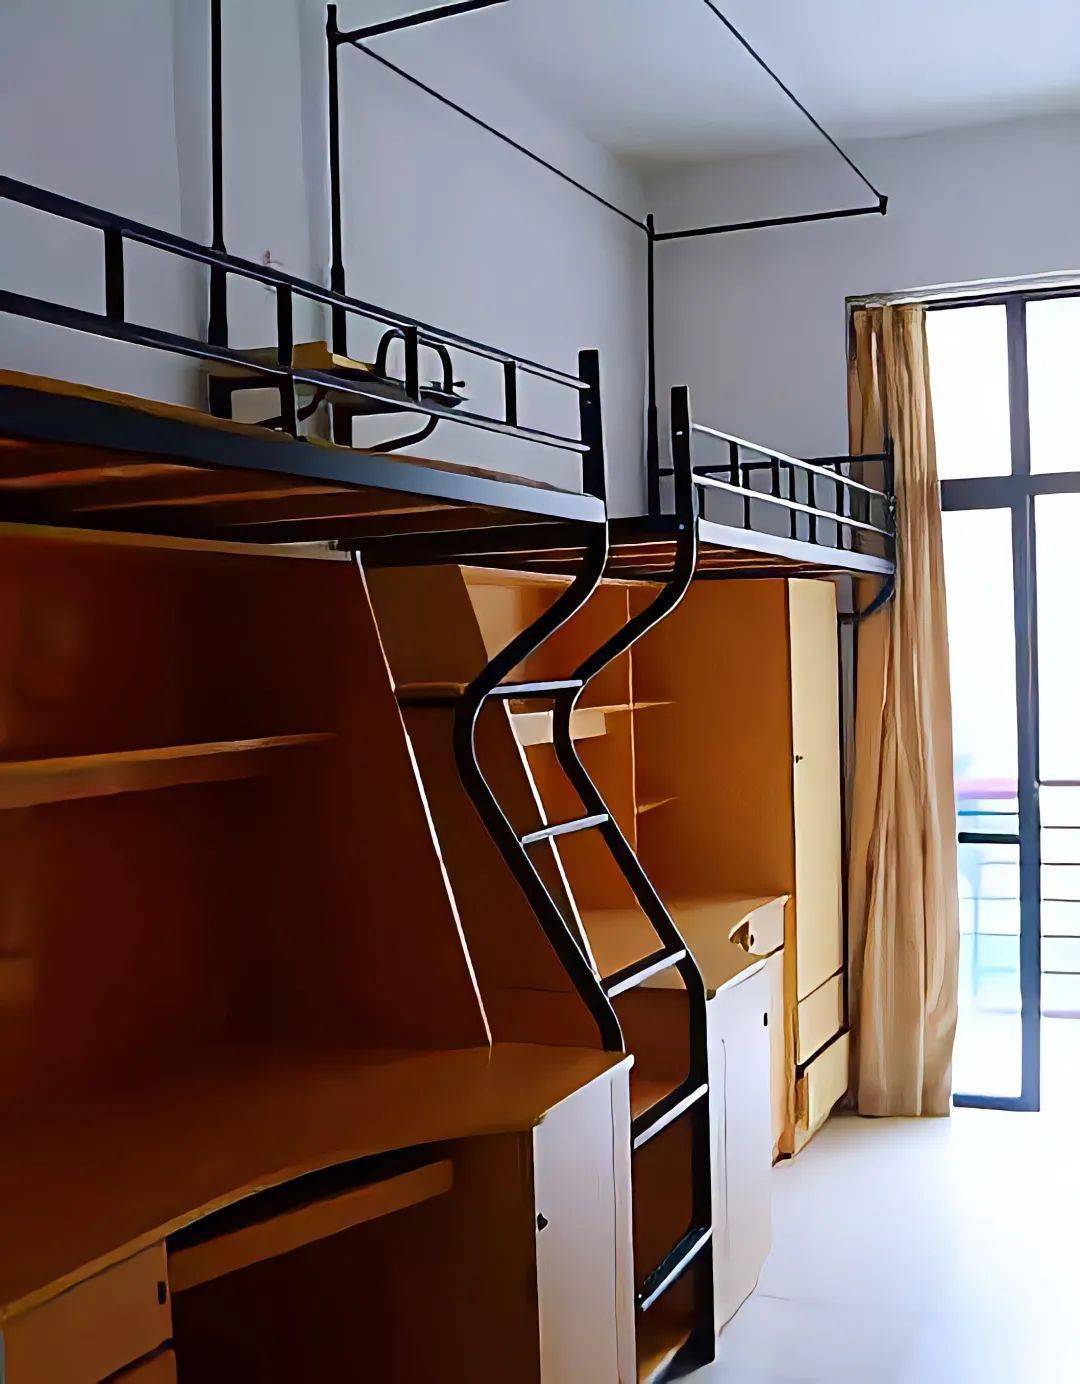 安徽绿海商务学院寝室图片